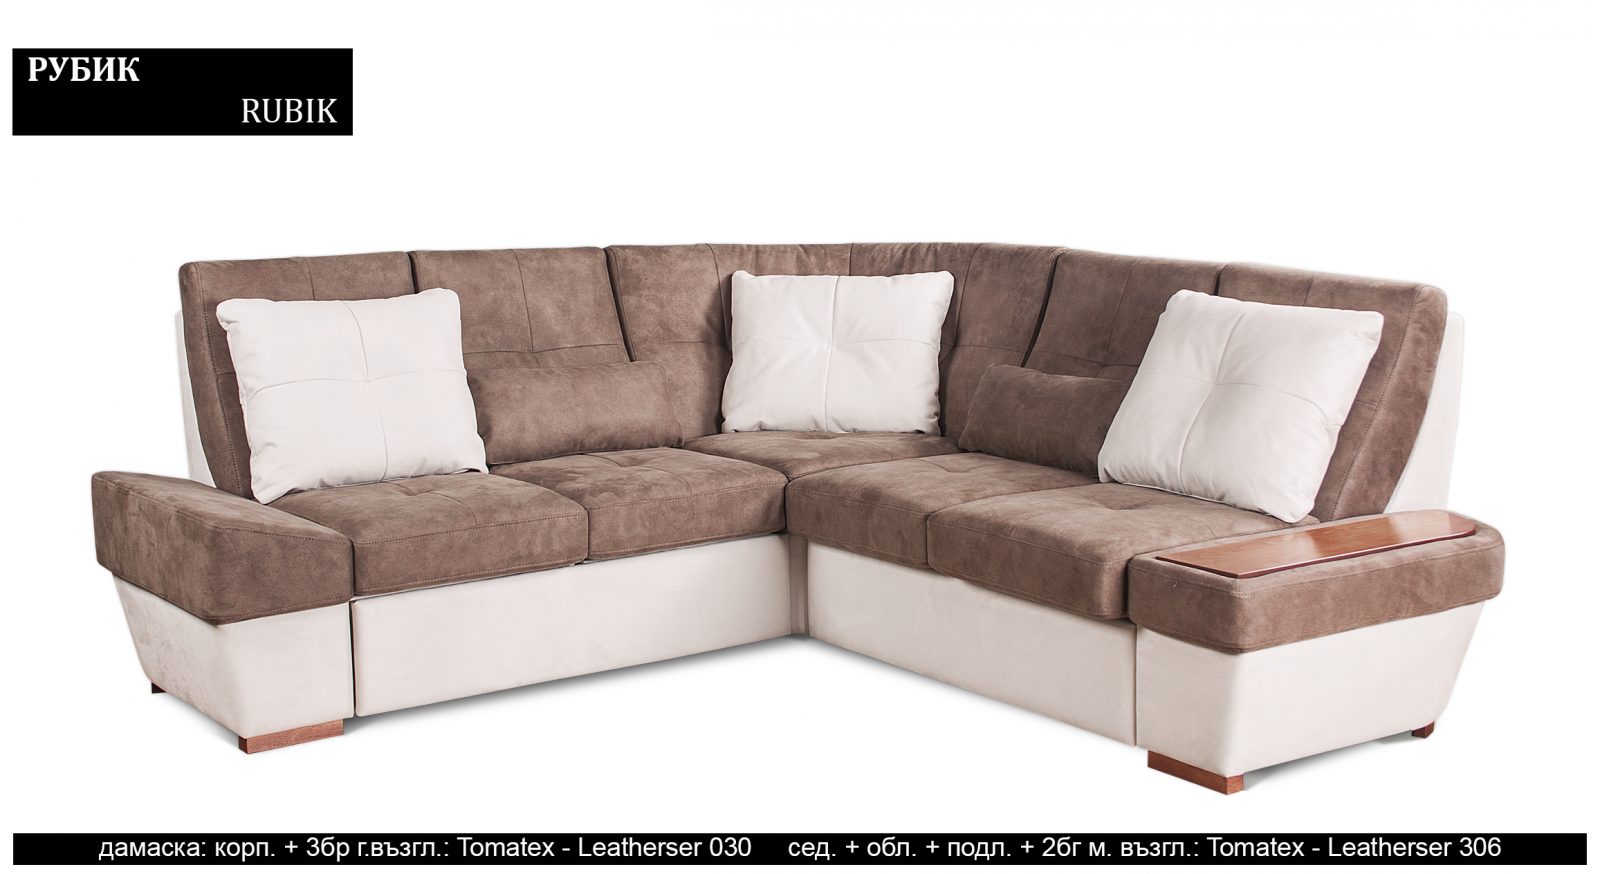 (Български) Разтегателен луксозен диван |”РУБИК”| Руди-Ан